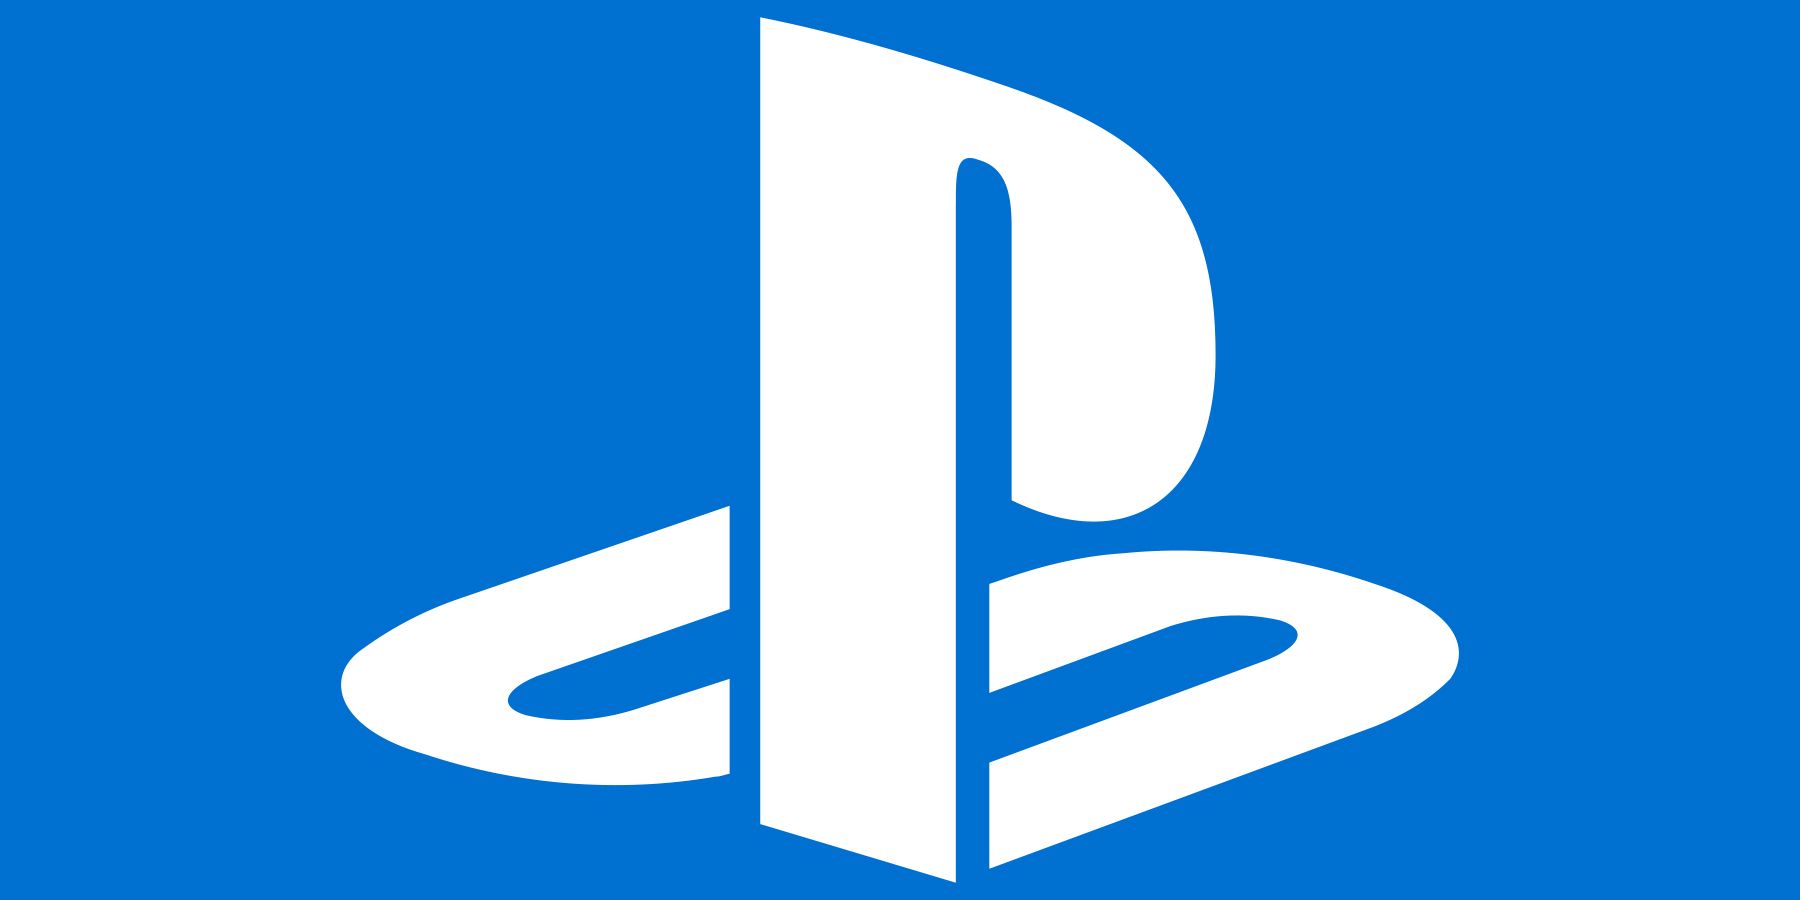 White PlayStation logo submark on blue background